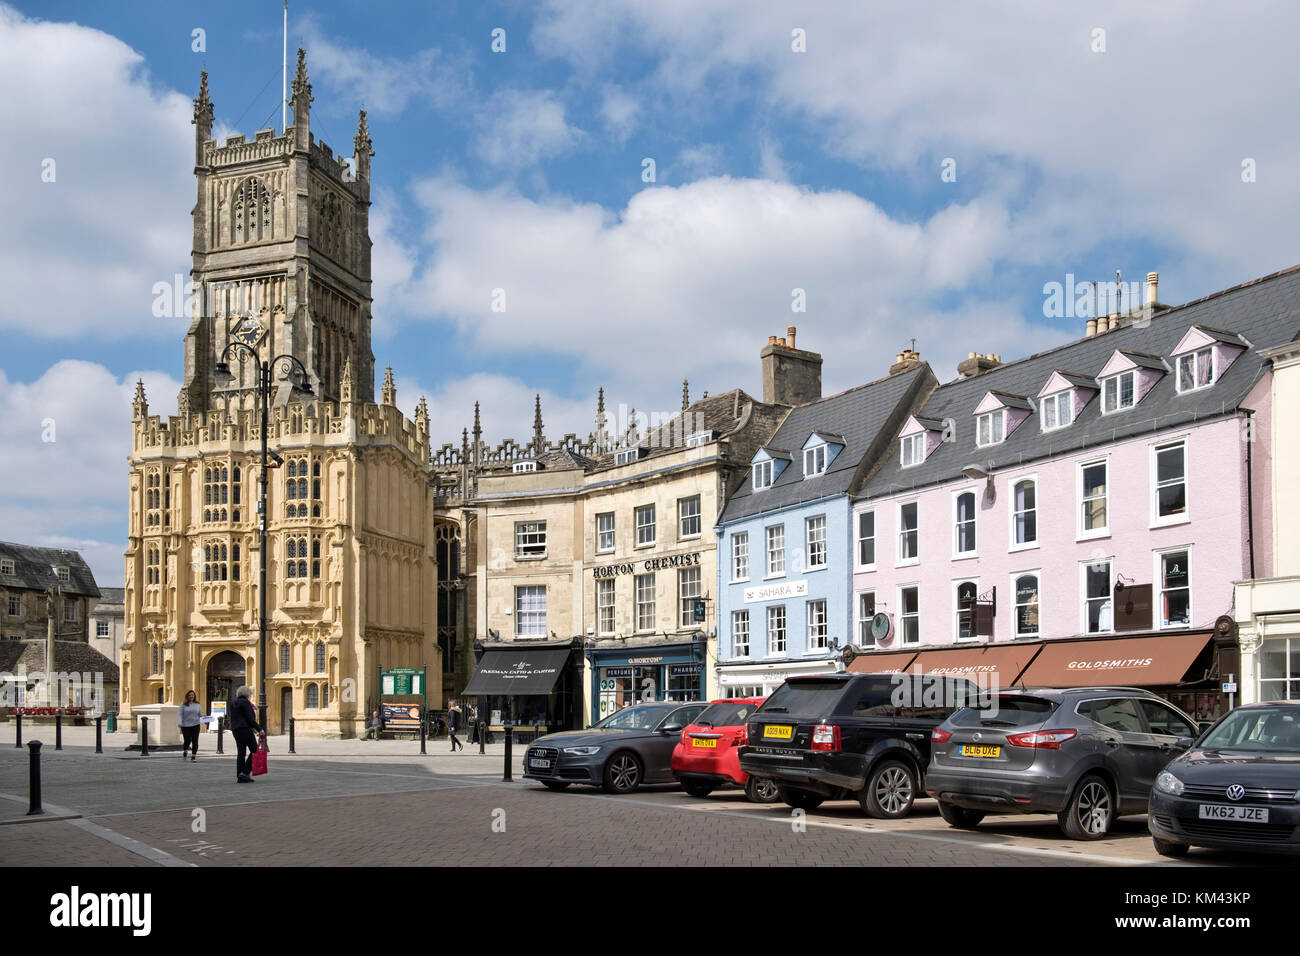 Den Marktplatz im Zentrum der Stadt Cirencester Gloucestershire, Vereinigtes Königreich. an einem sonnigen Tag, die Kirche des Hl. Johannes des Täufers. & Autos geparkt. Stockfoto